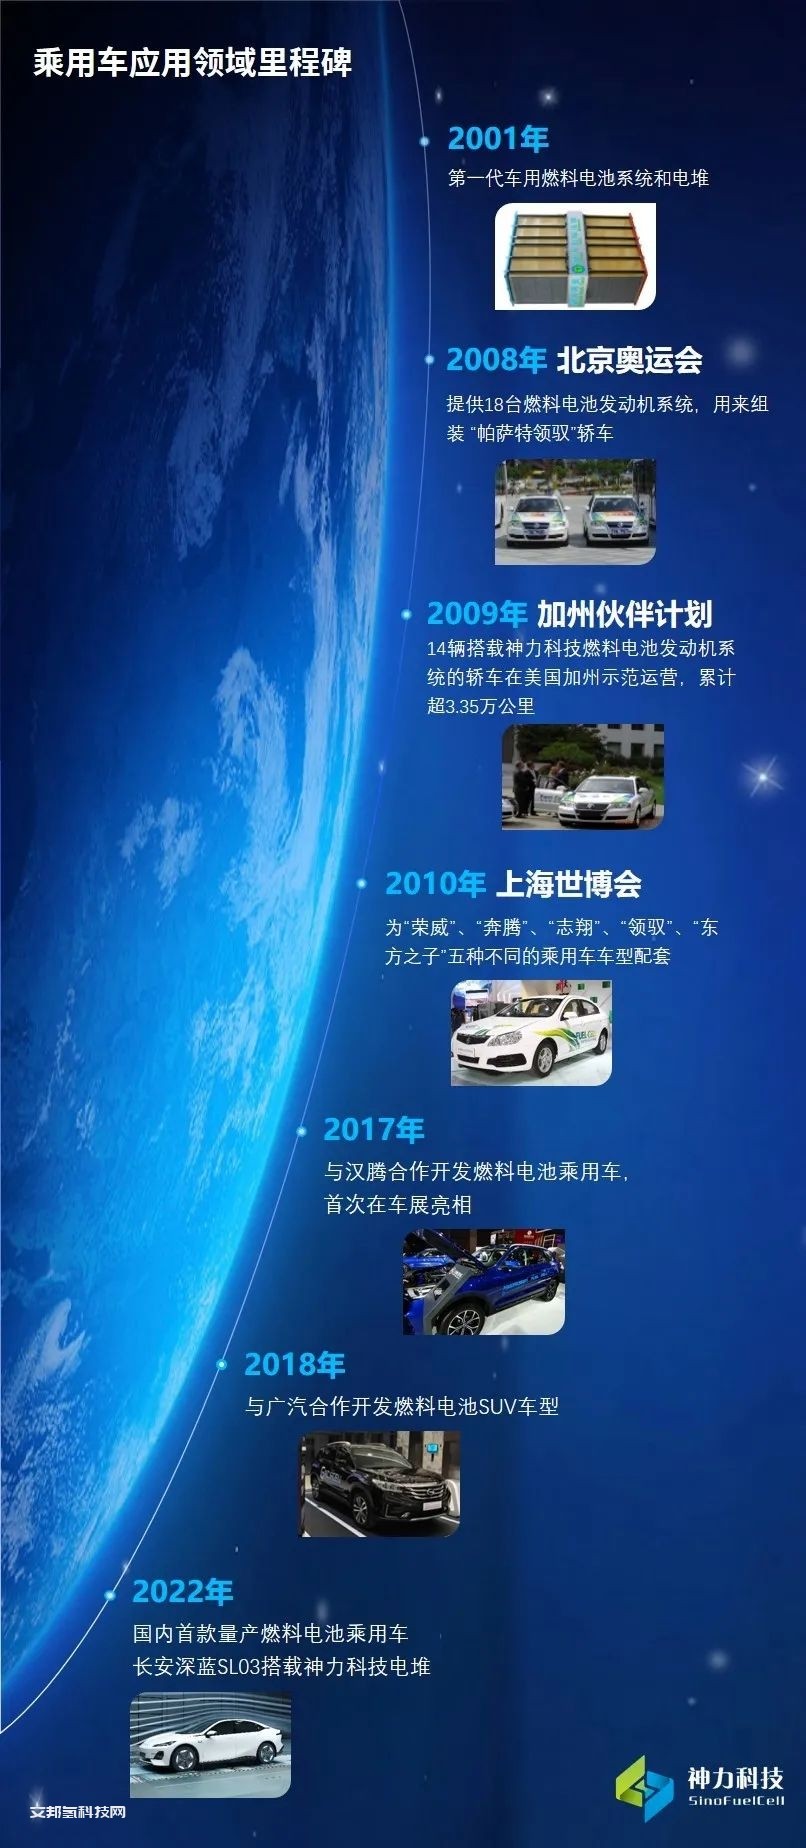 国内首款量产氢燃料电池轿车长安深蓝SL03正式上市，搭载神力科技电堆